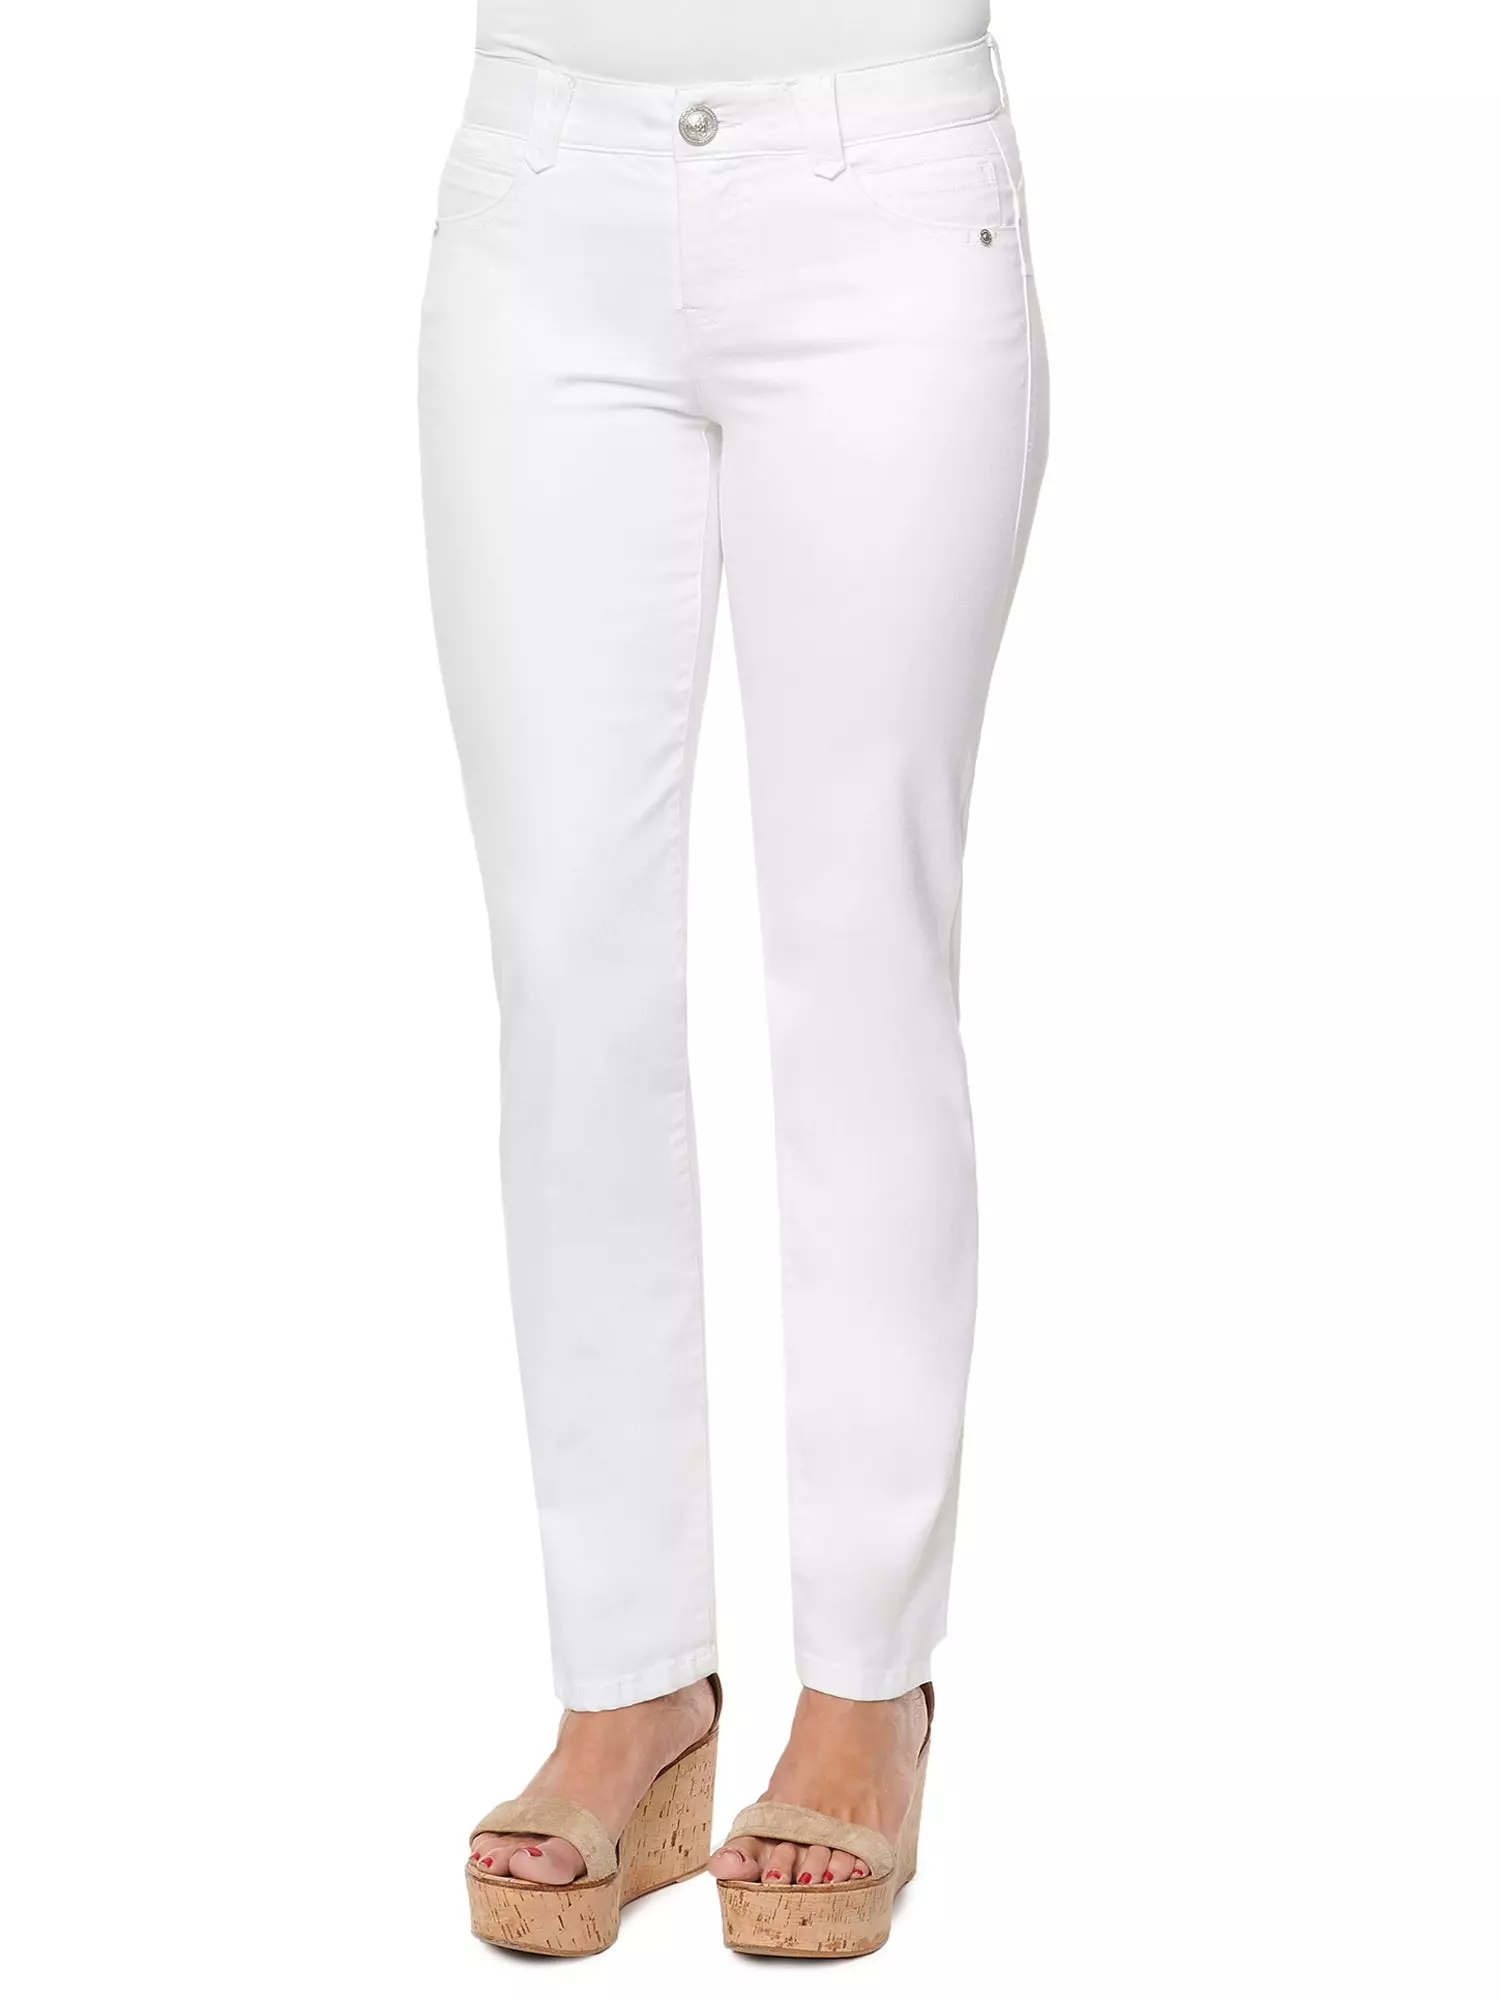 Best White Jeans For Women